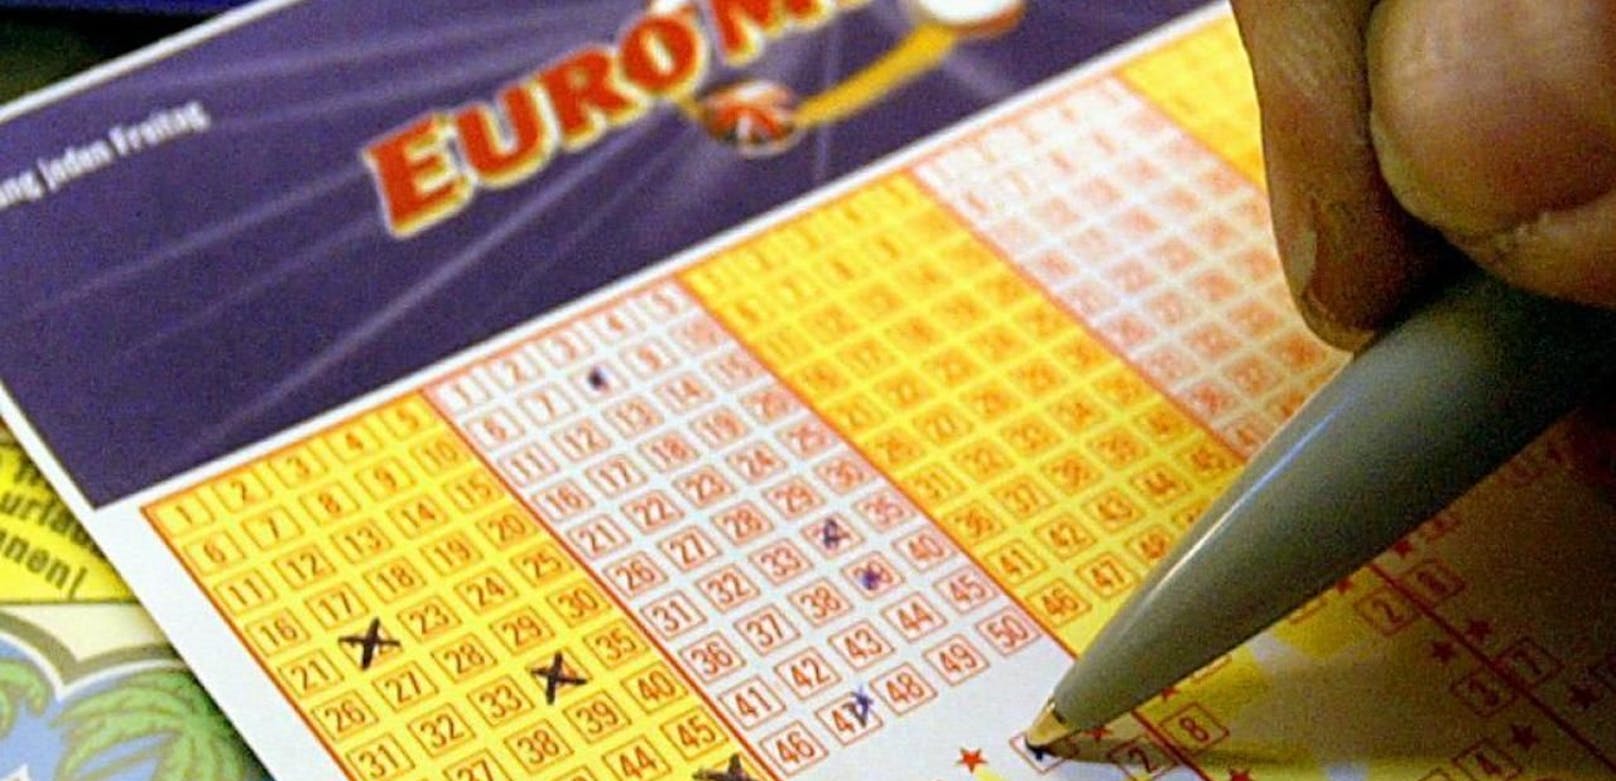 Bei Lotto, Joker und EuroMillionen (Bild) gibt es ab Juli einige Änderungen.